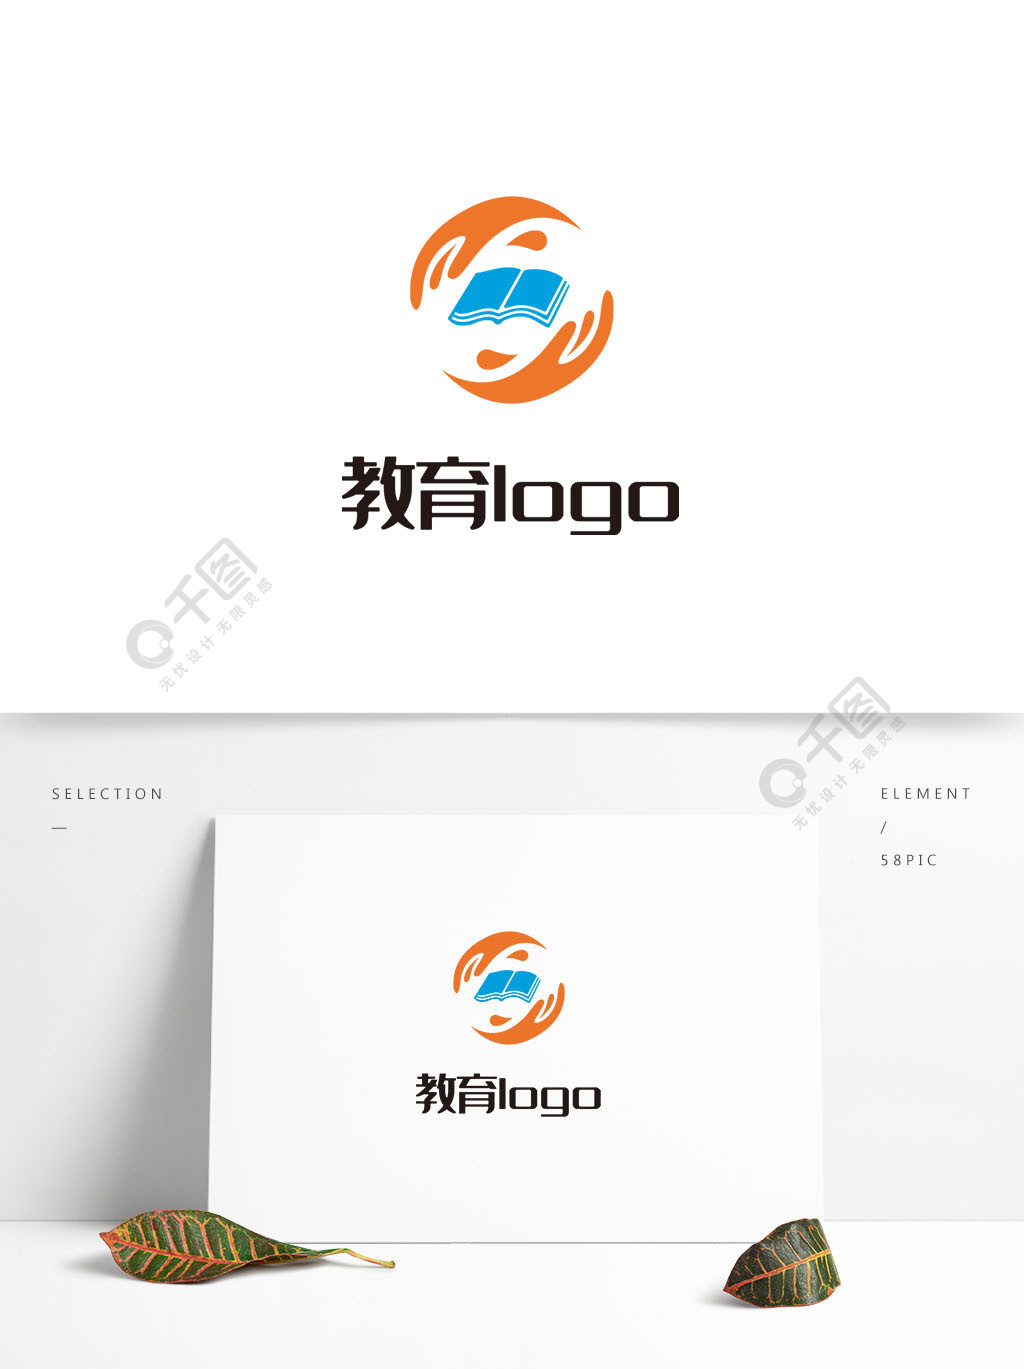 圆形简约大气创意教育行业logo标志设计2年前发布